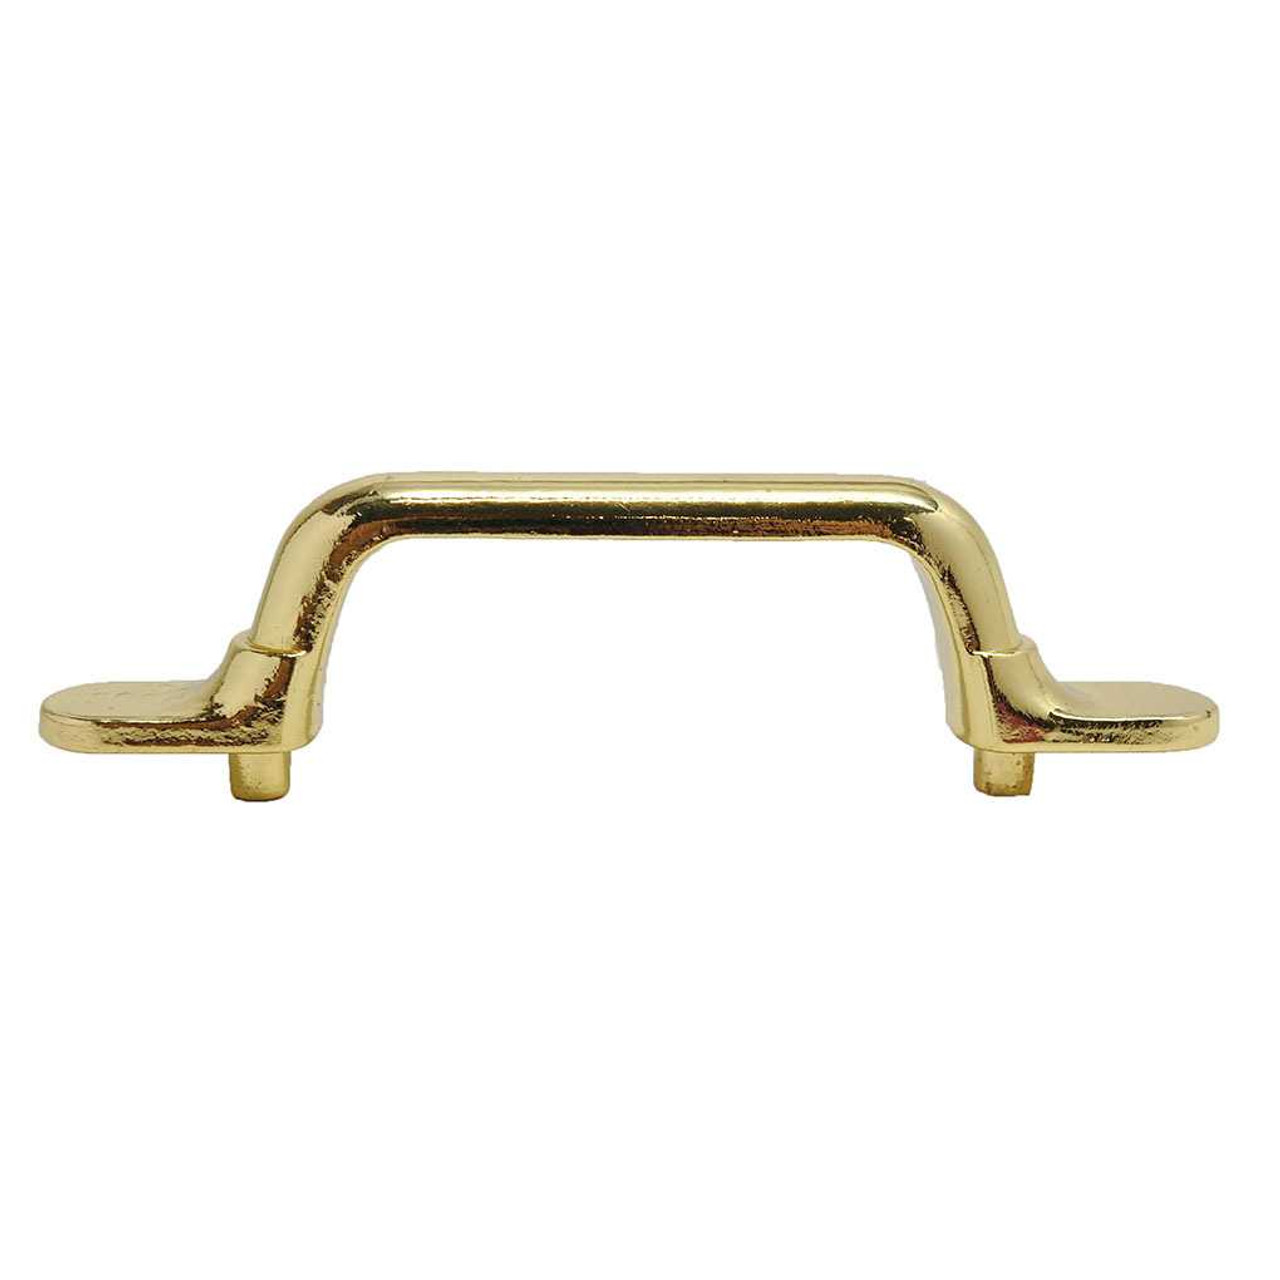 Keeler P27350 Polished Brass Elegance Triple Swivel Solid Brass